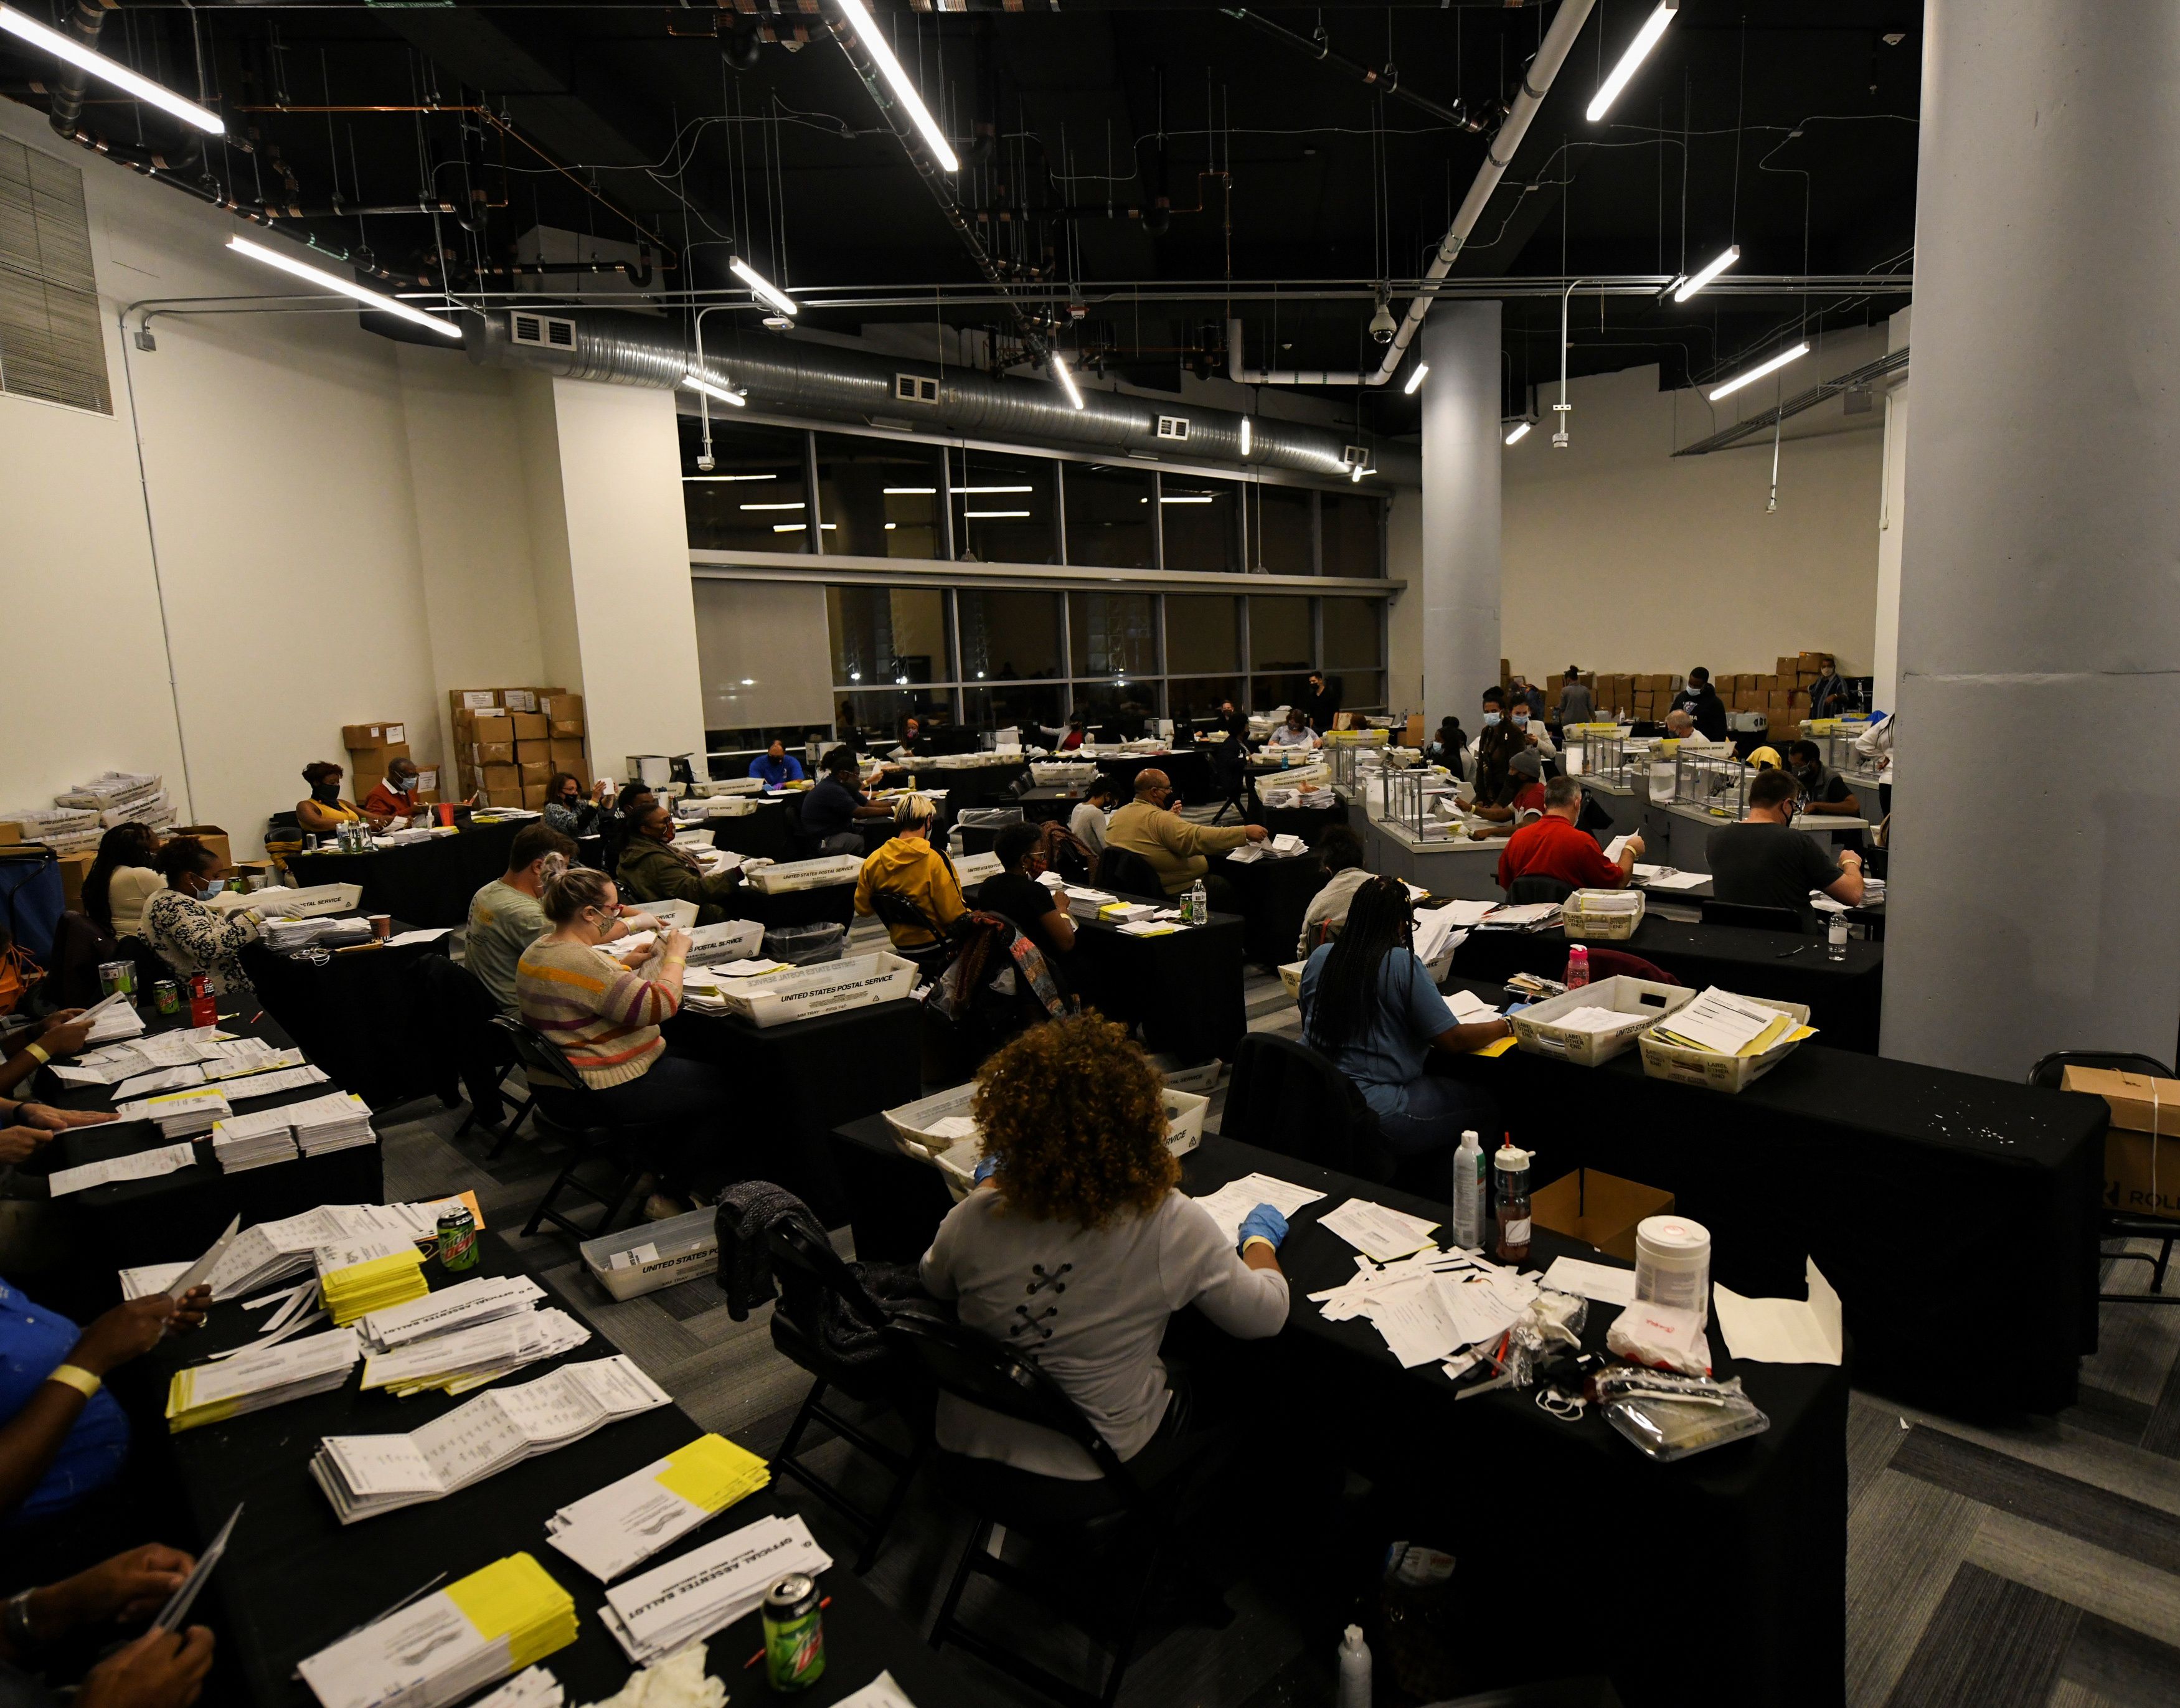 Empleados del centro electoral del Condado de Fulton en Georgia (REUTERS/Brandon Bell)